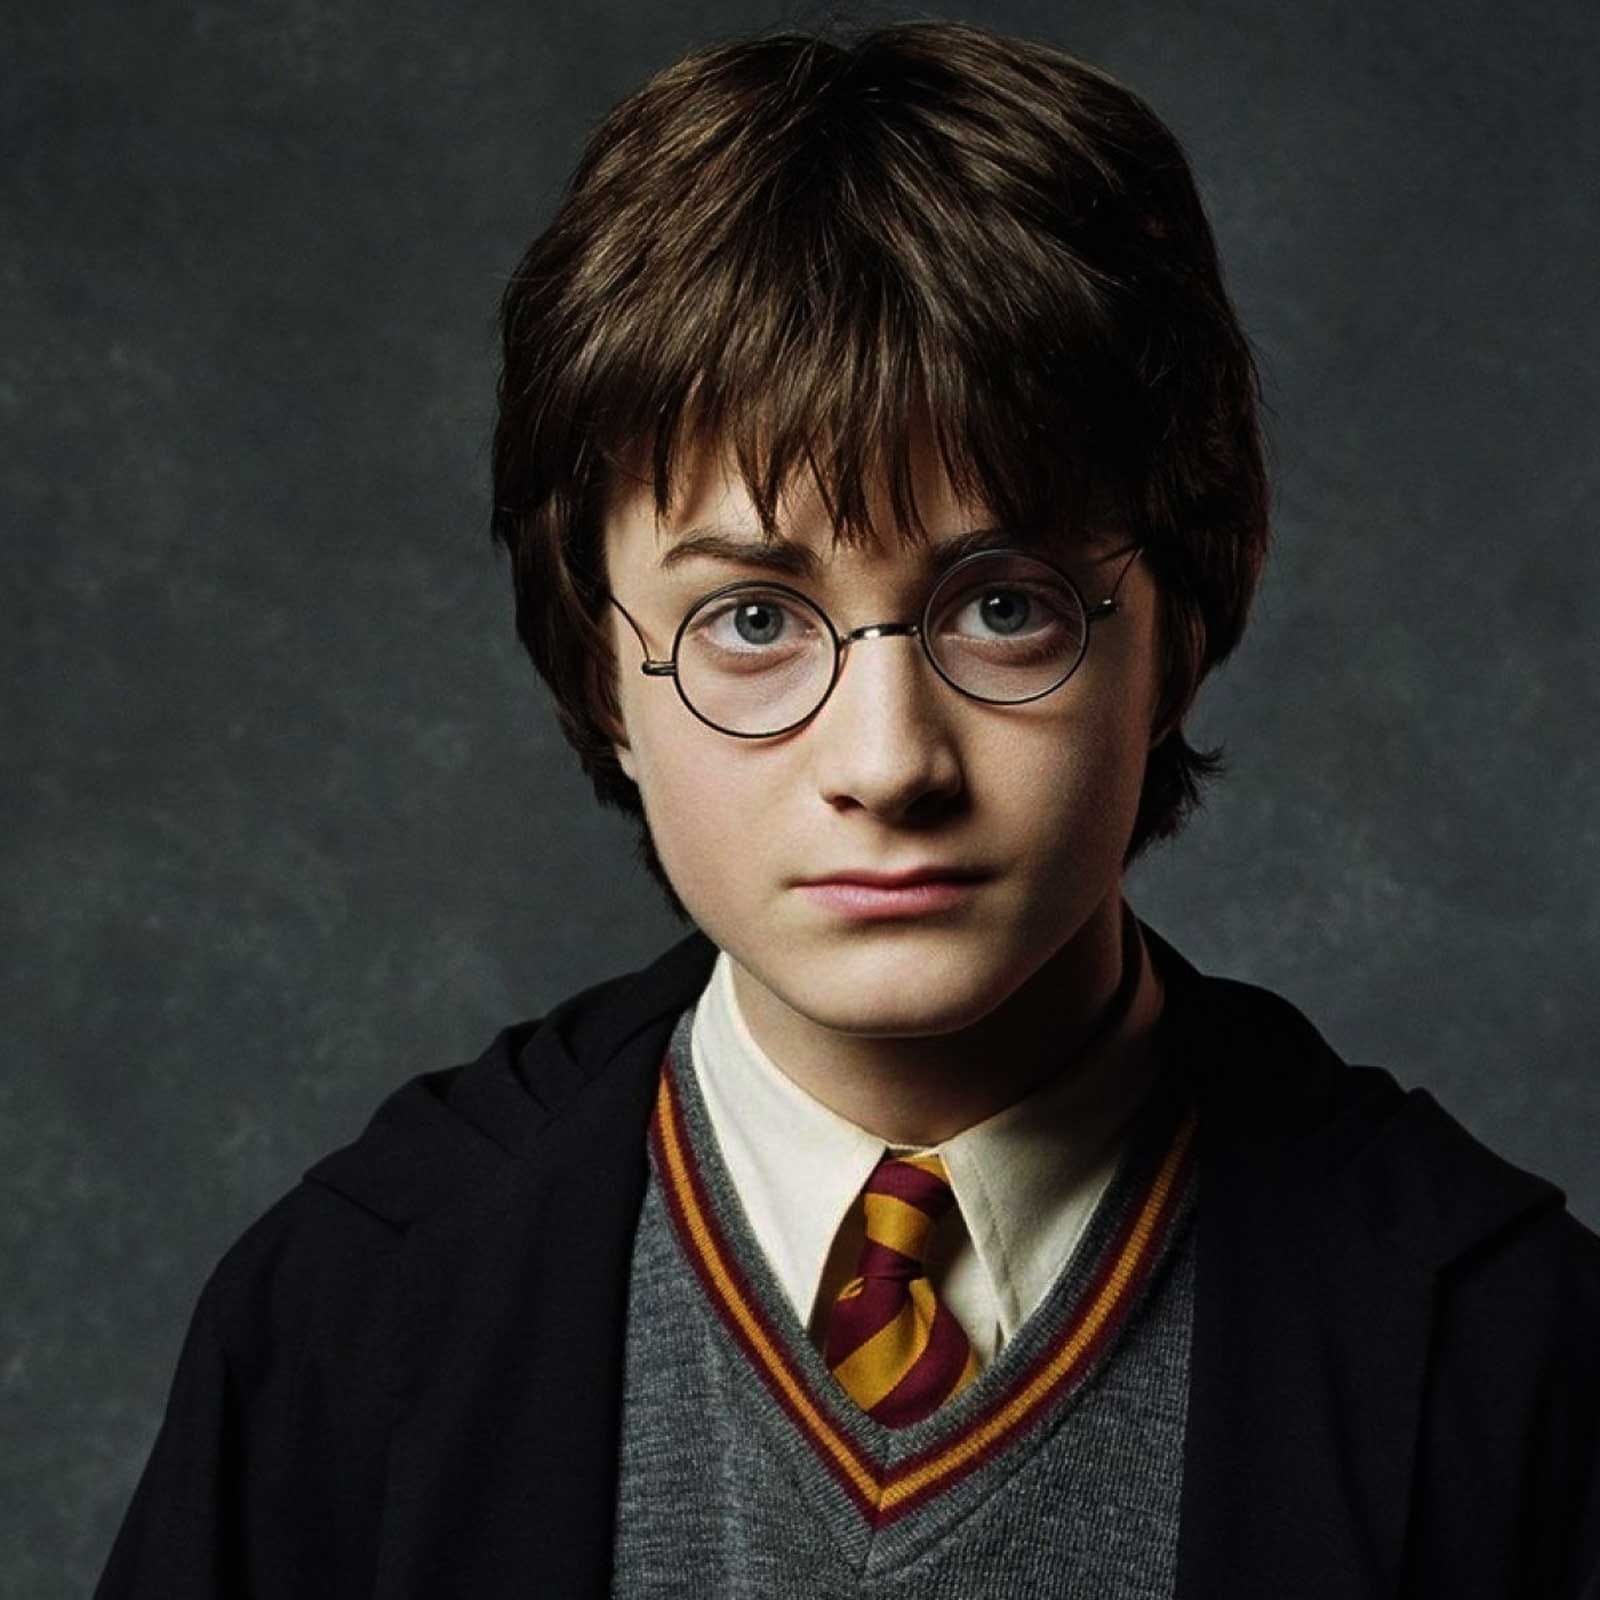 Сериал по «Гарри Поттеру»: слухи, факты и причины недовольства фанатов